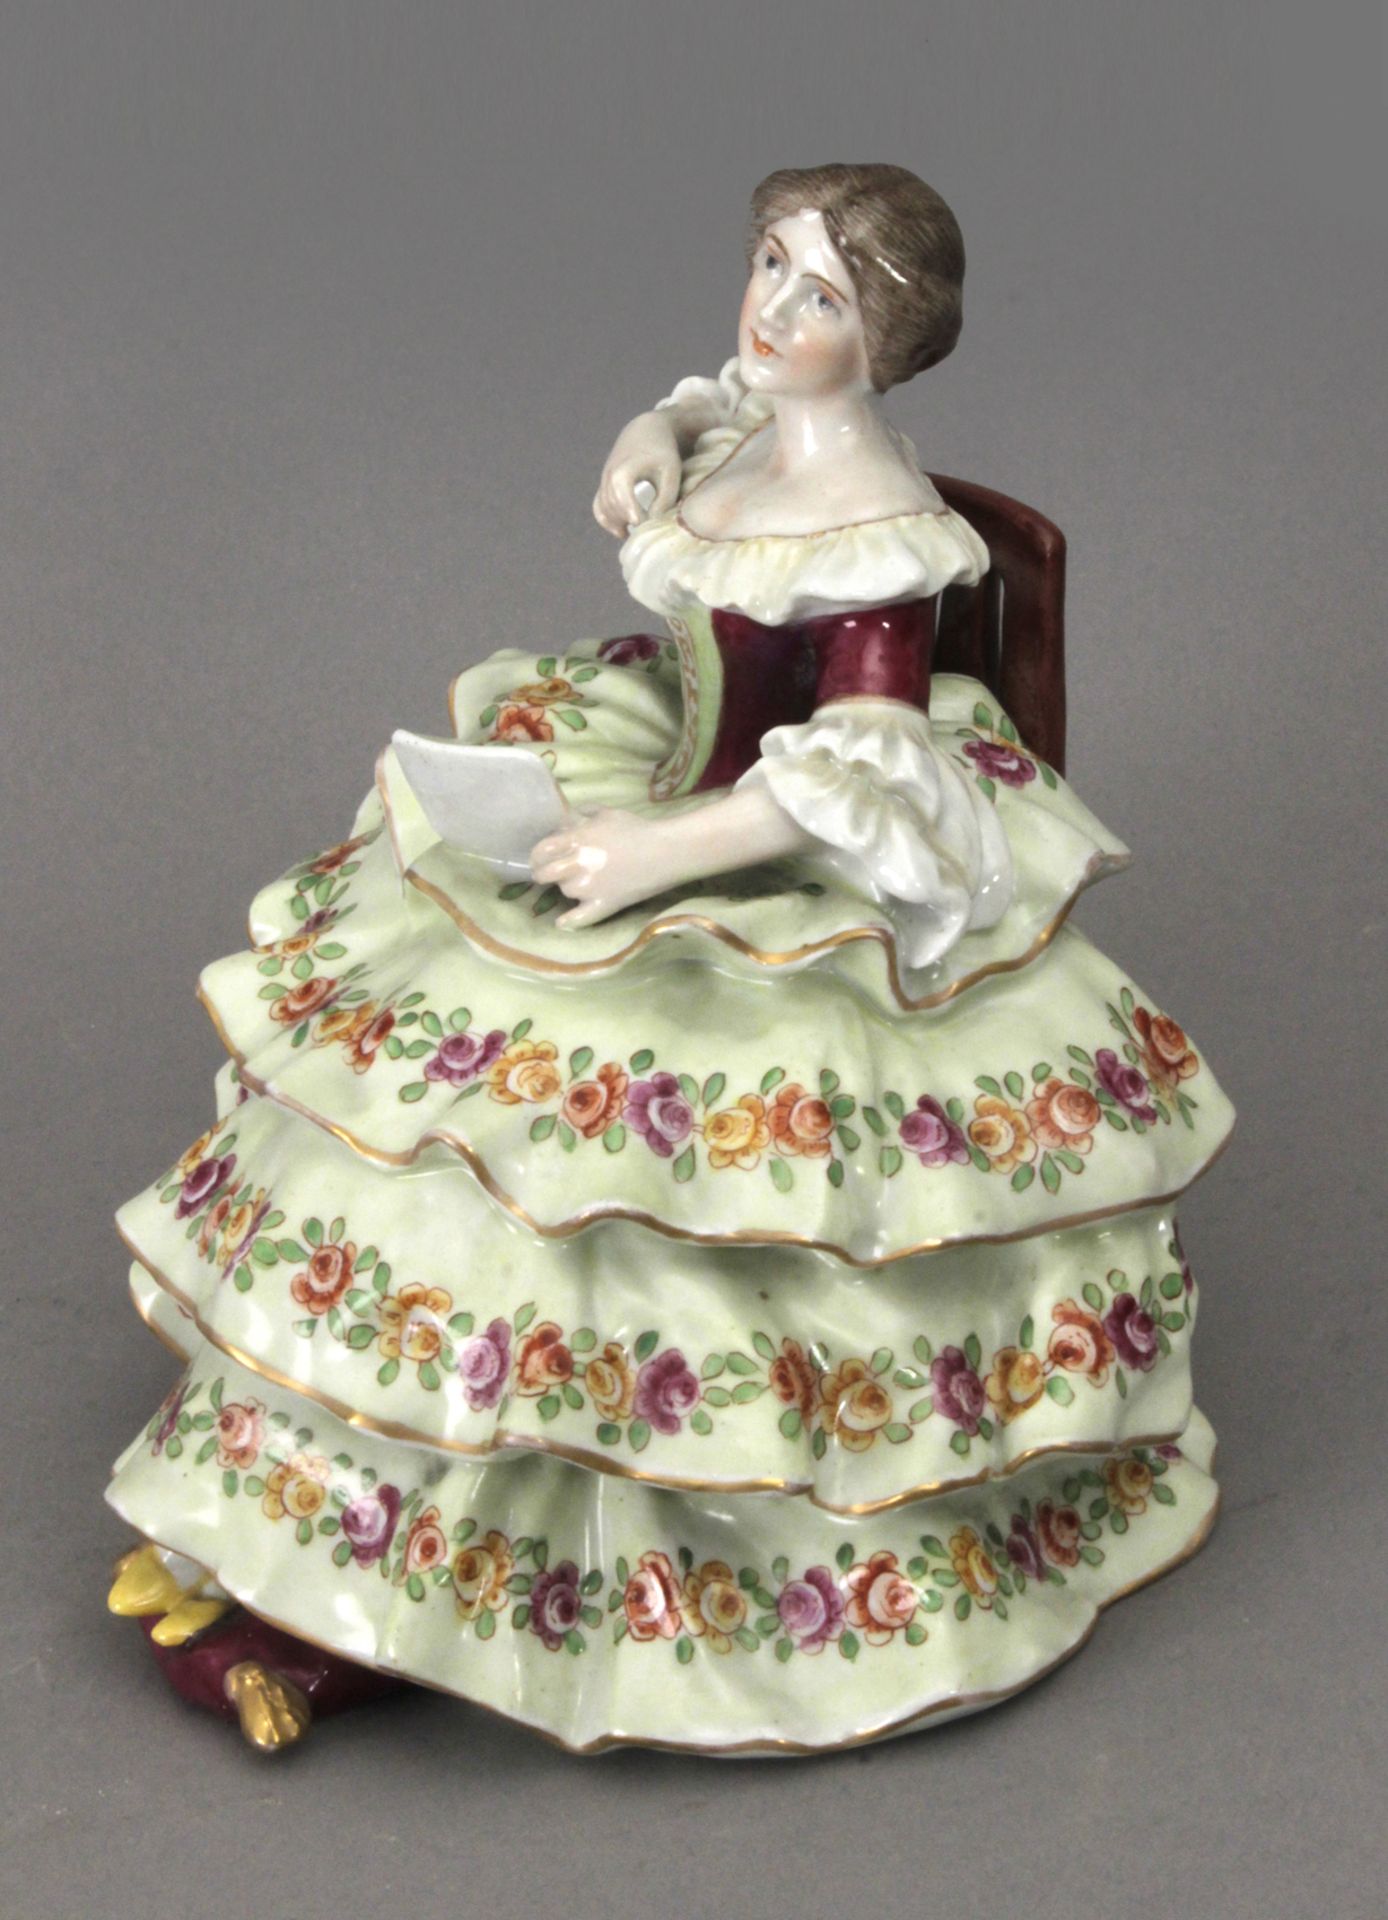 Early 20th century dame figurine in Von Schierholz porcelain